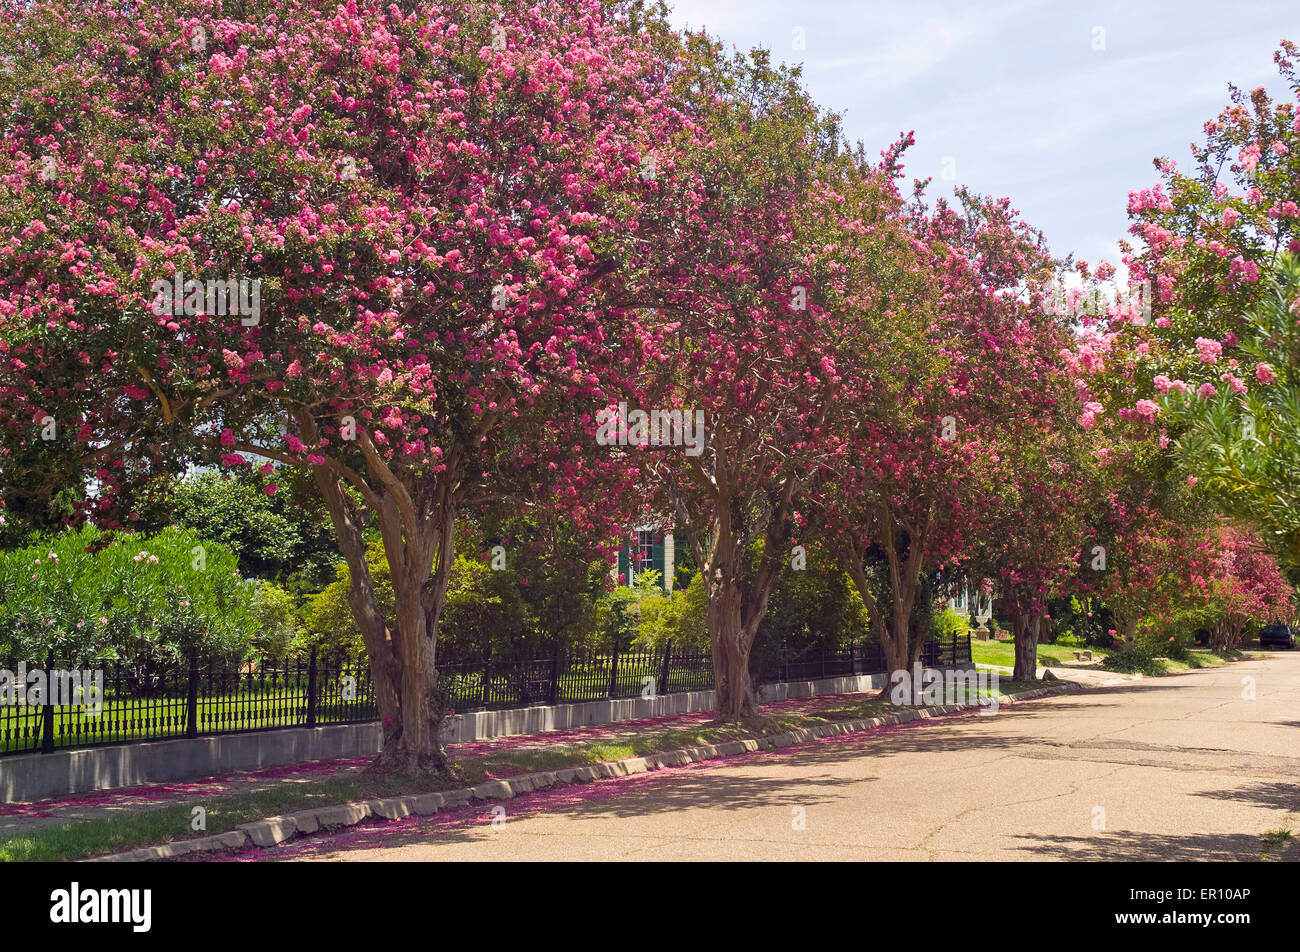 Fioritura arricciato alberi di mirto portare brillanti colori rosa in una tranquilla strada residenziale nel centro storico di Natchez, Mississippi, Stati Uniti d'America. Foto Stock